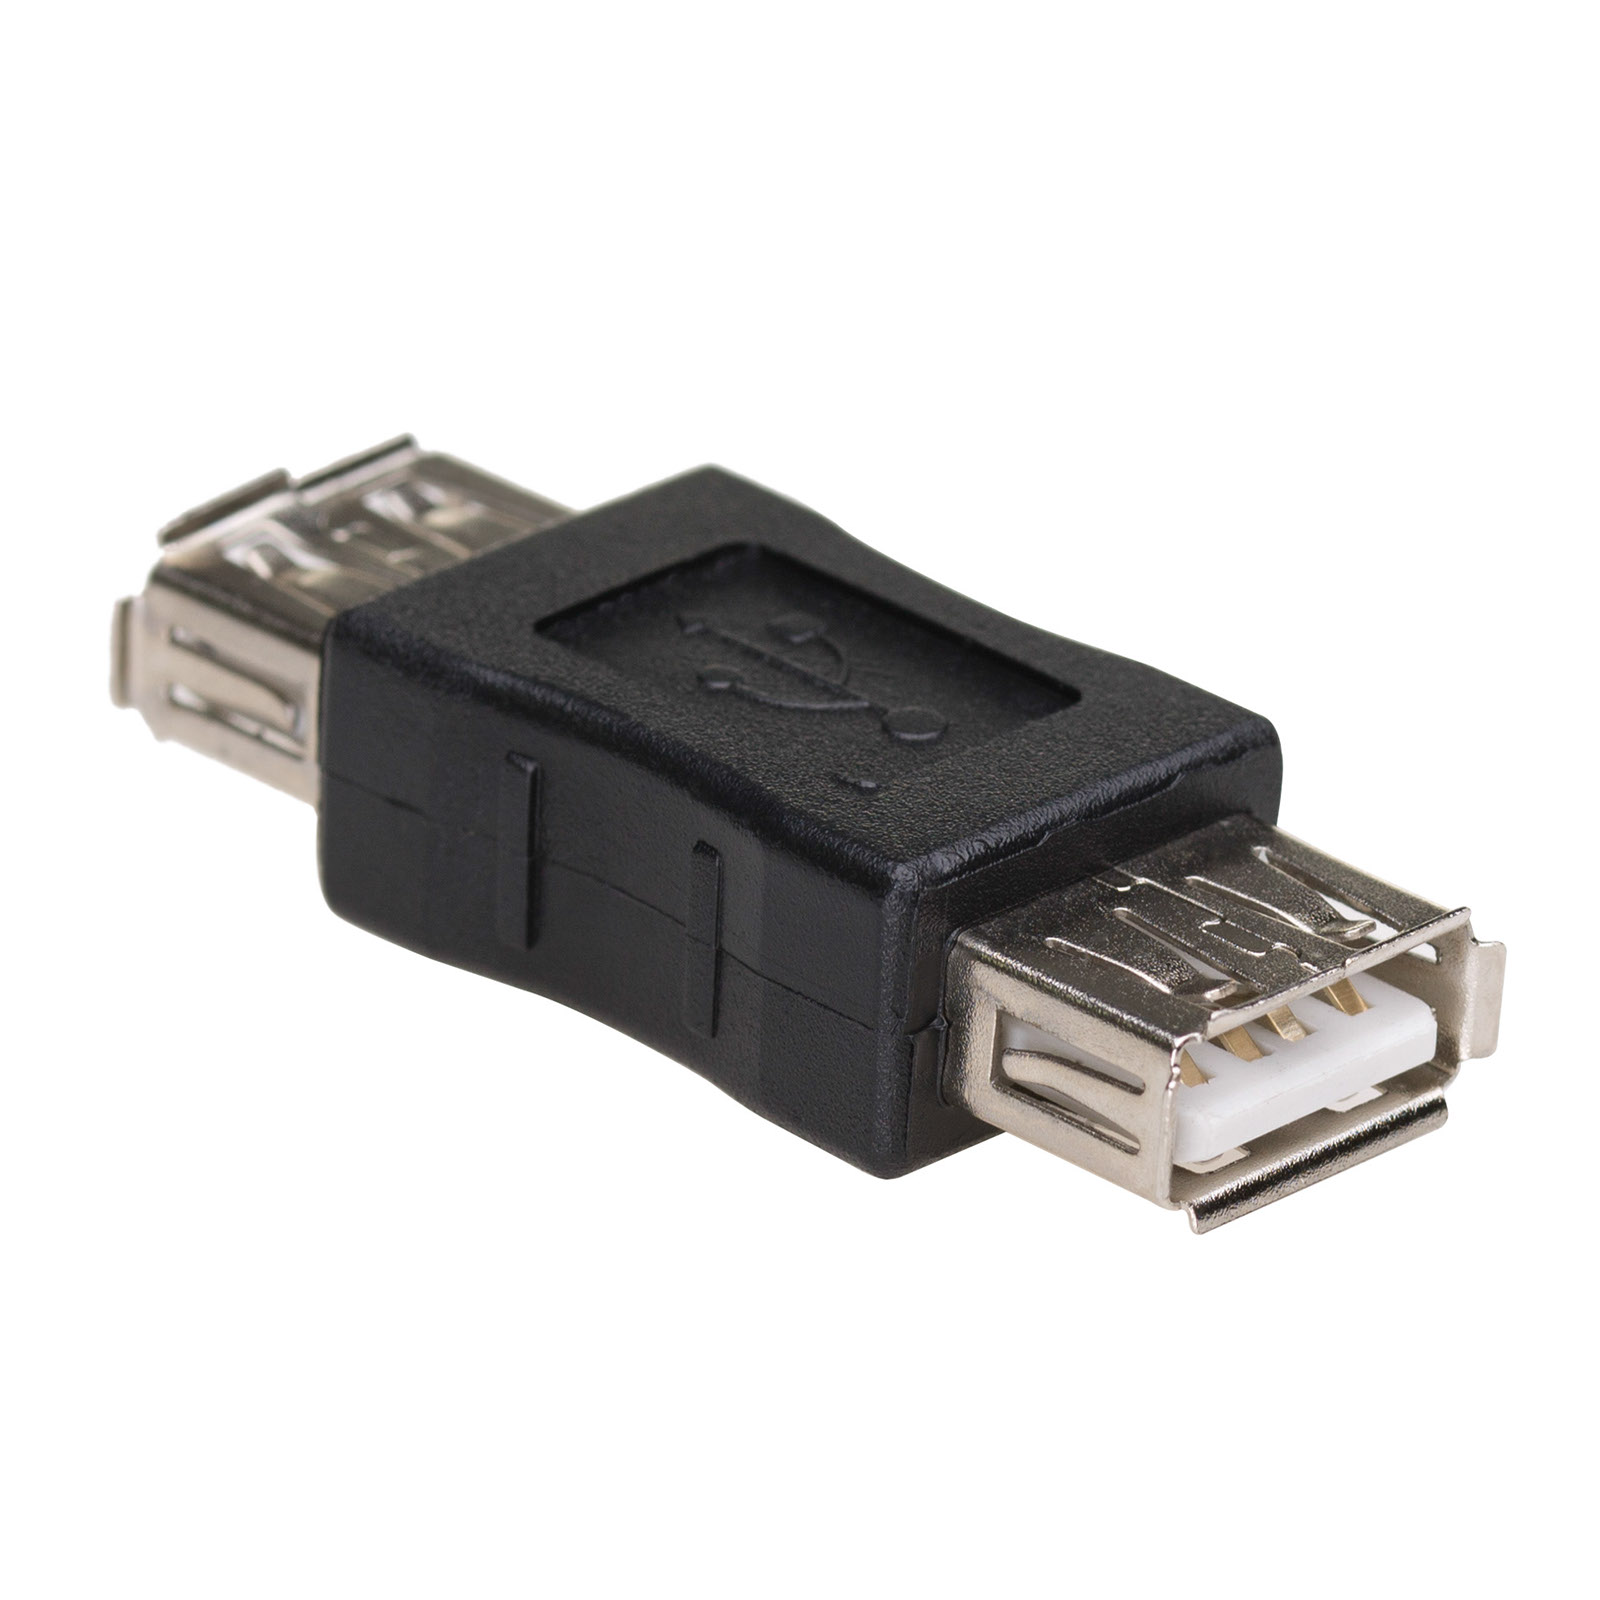 main_image Адаптер AK-AD-06 USB-AF / USB-AF